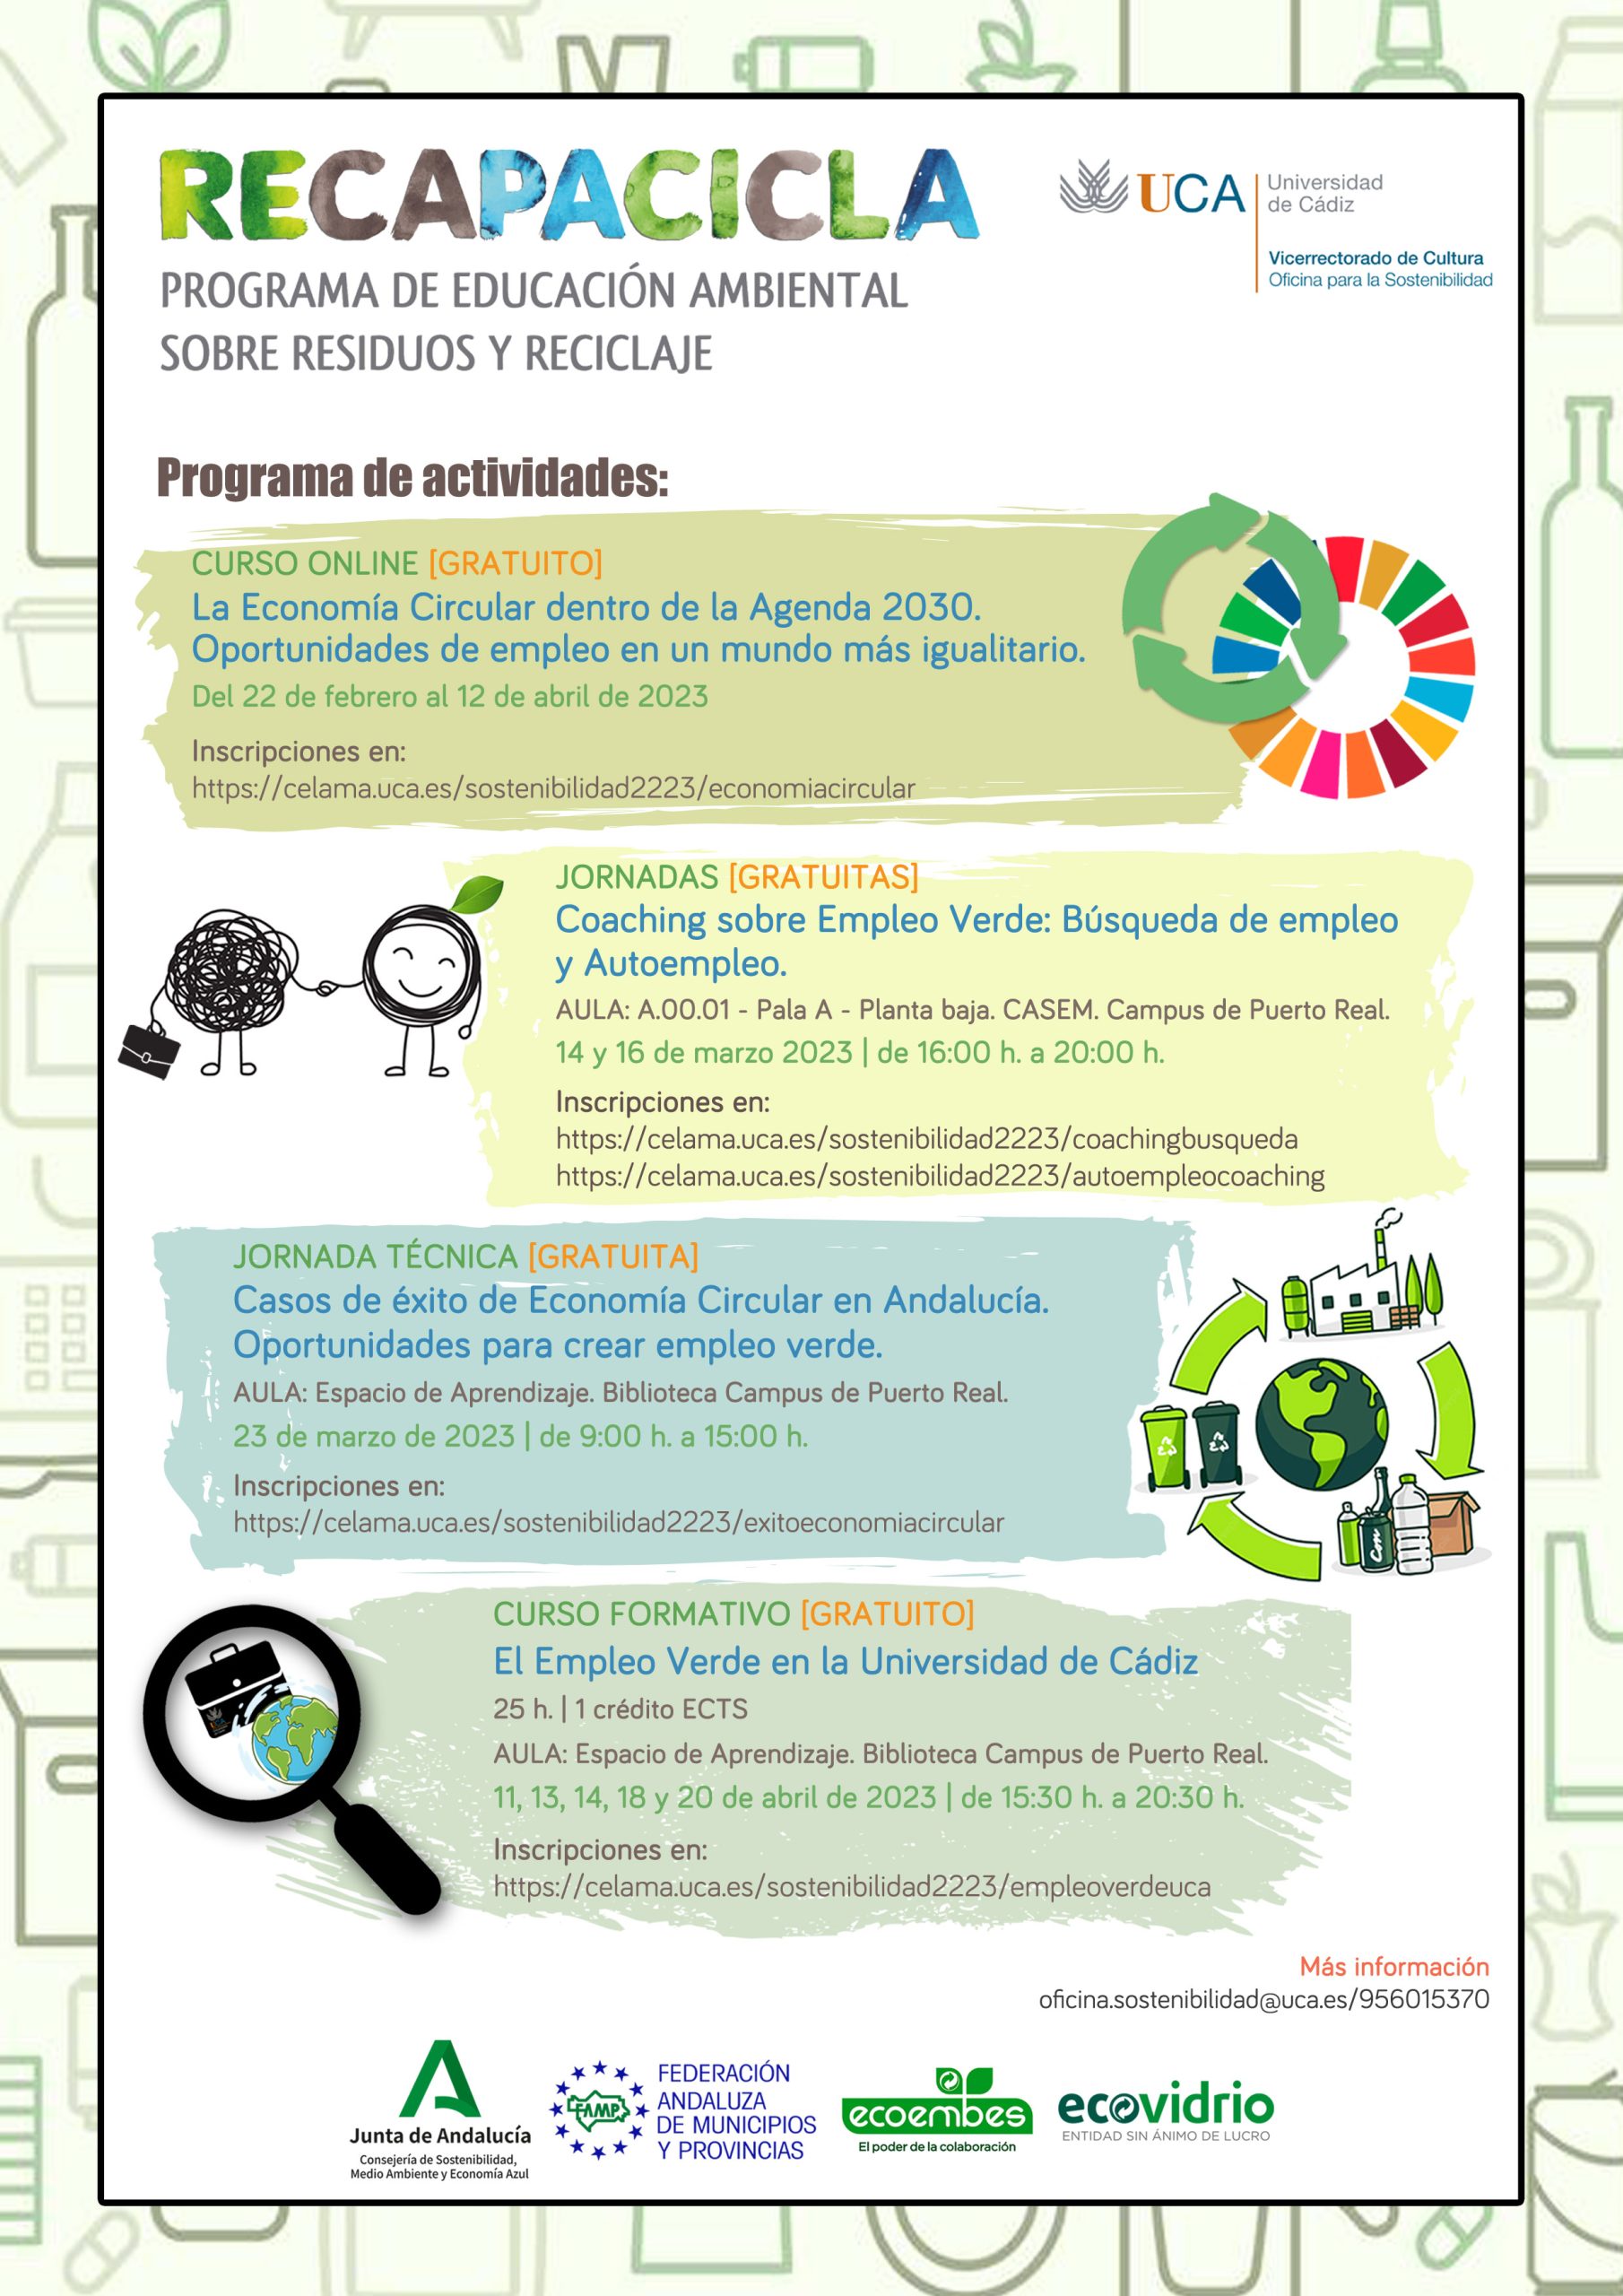 La Economía Circular: una oportunidad para el crecimiento del Empleo Verde en la Universidad de Cádiz